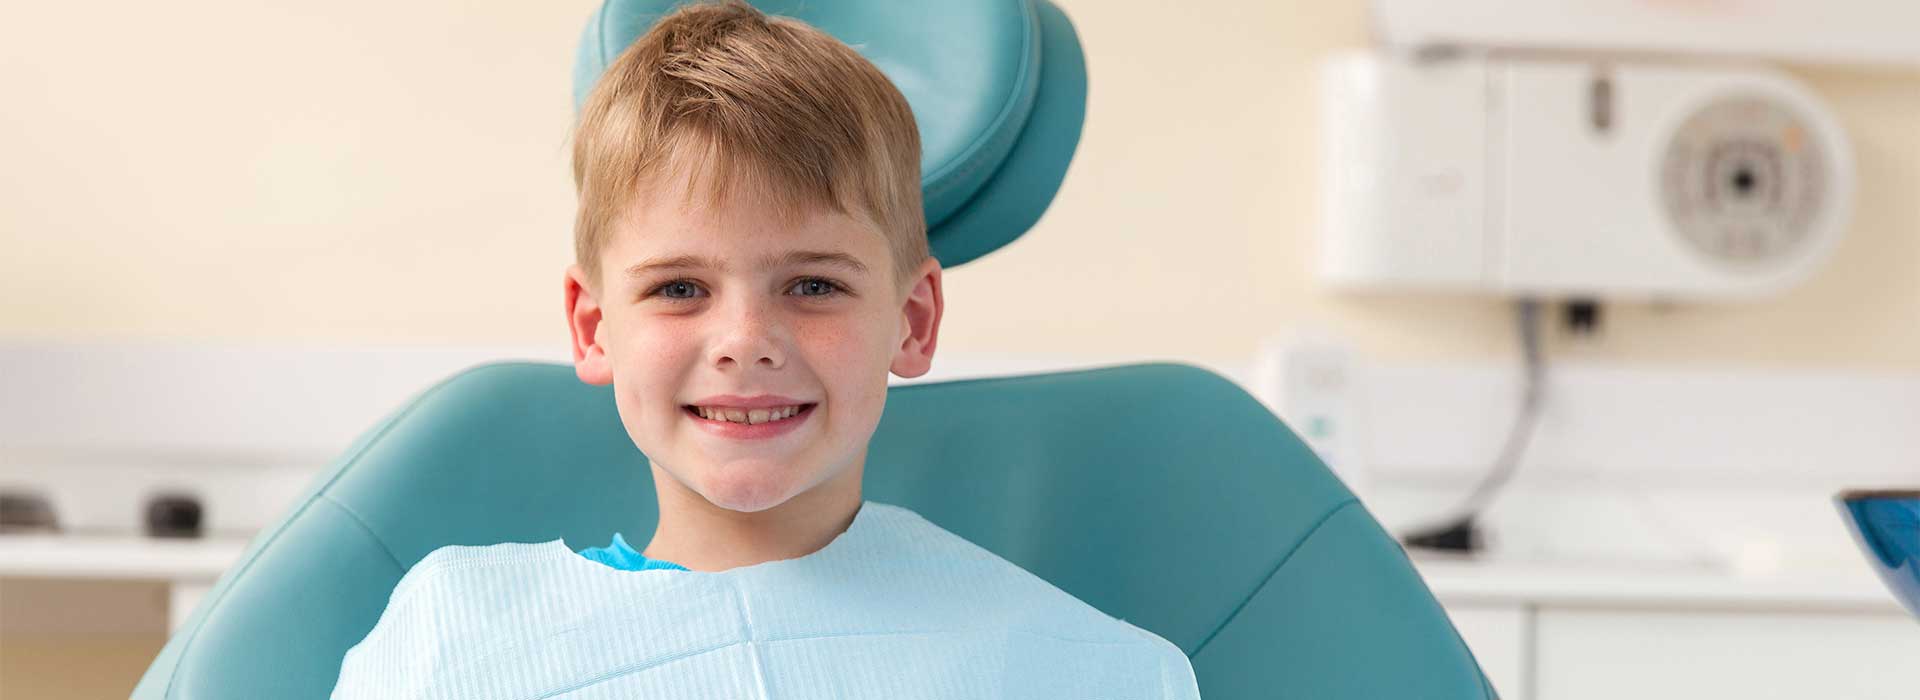 A kid smiling at dental